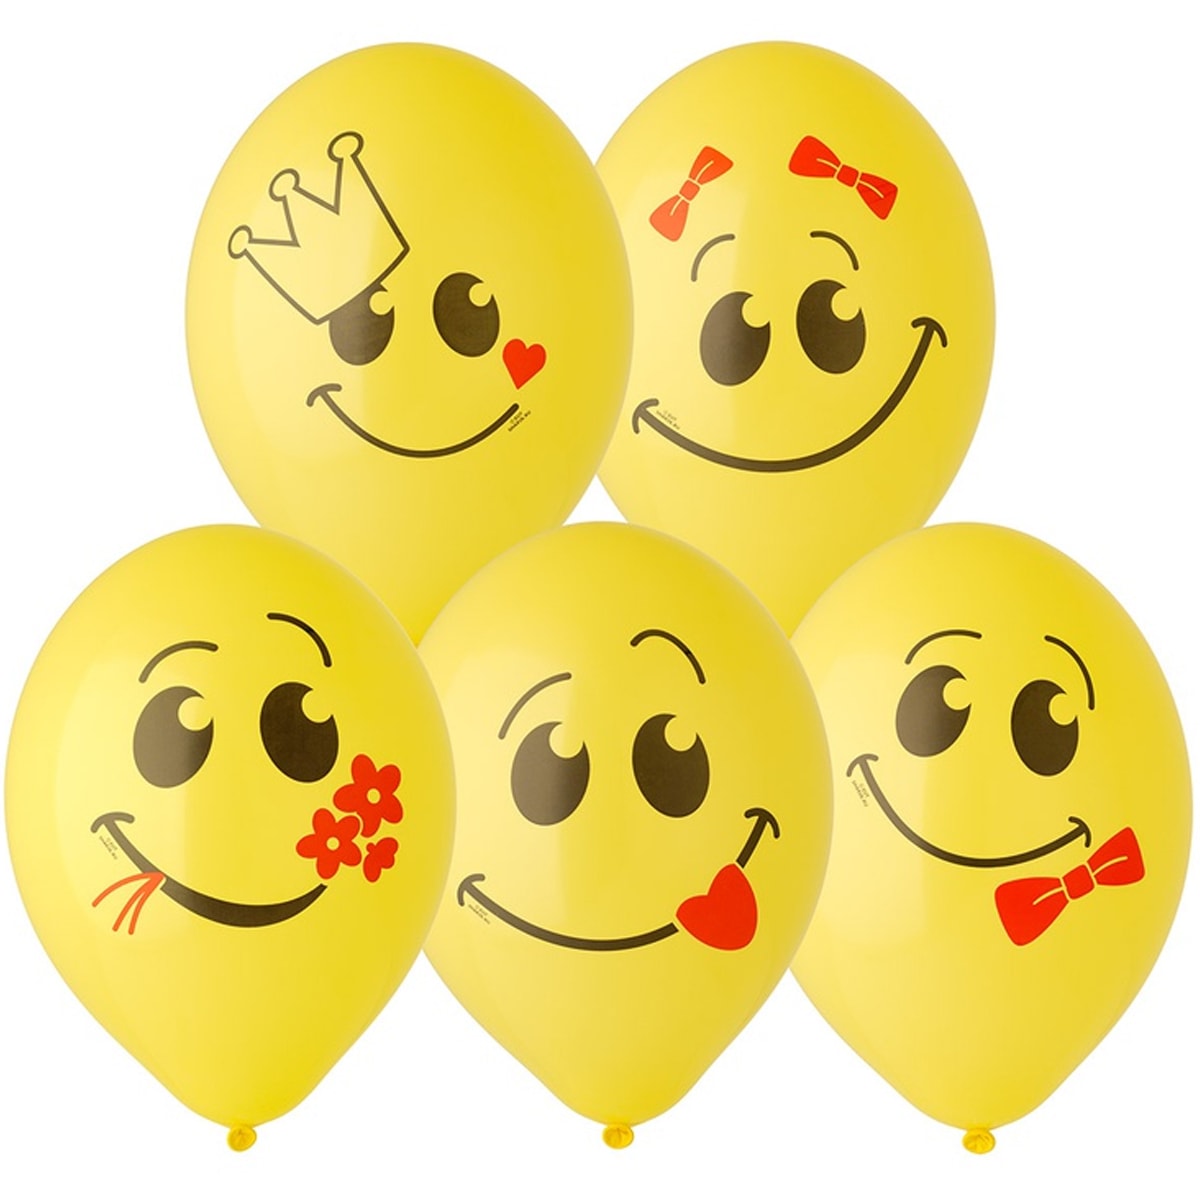 желтые воздушные шарики улыбки смайлики для отличного настроения на восьмое мартадля девушек и женщин